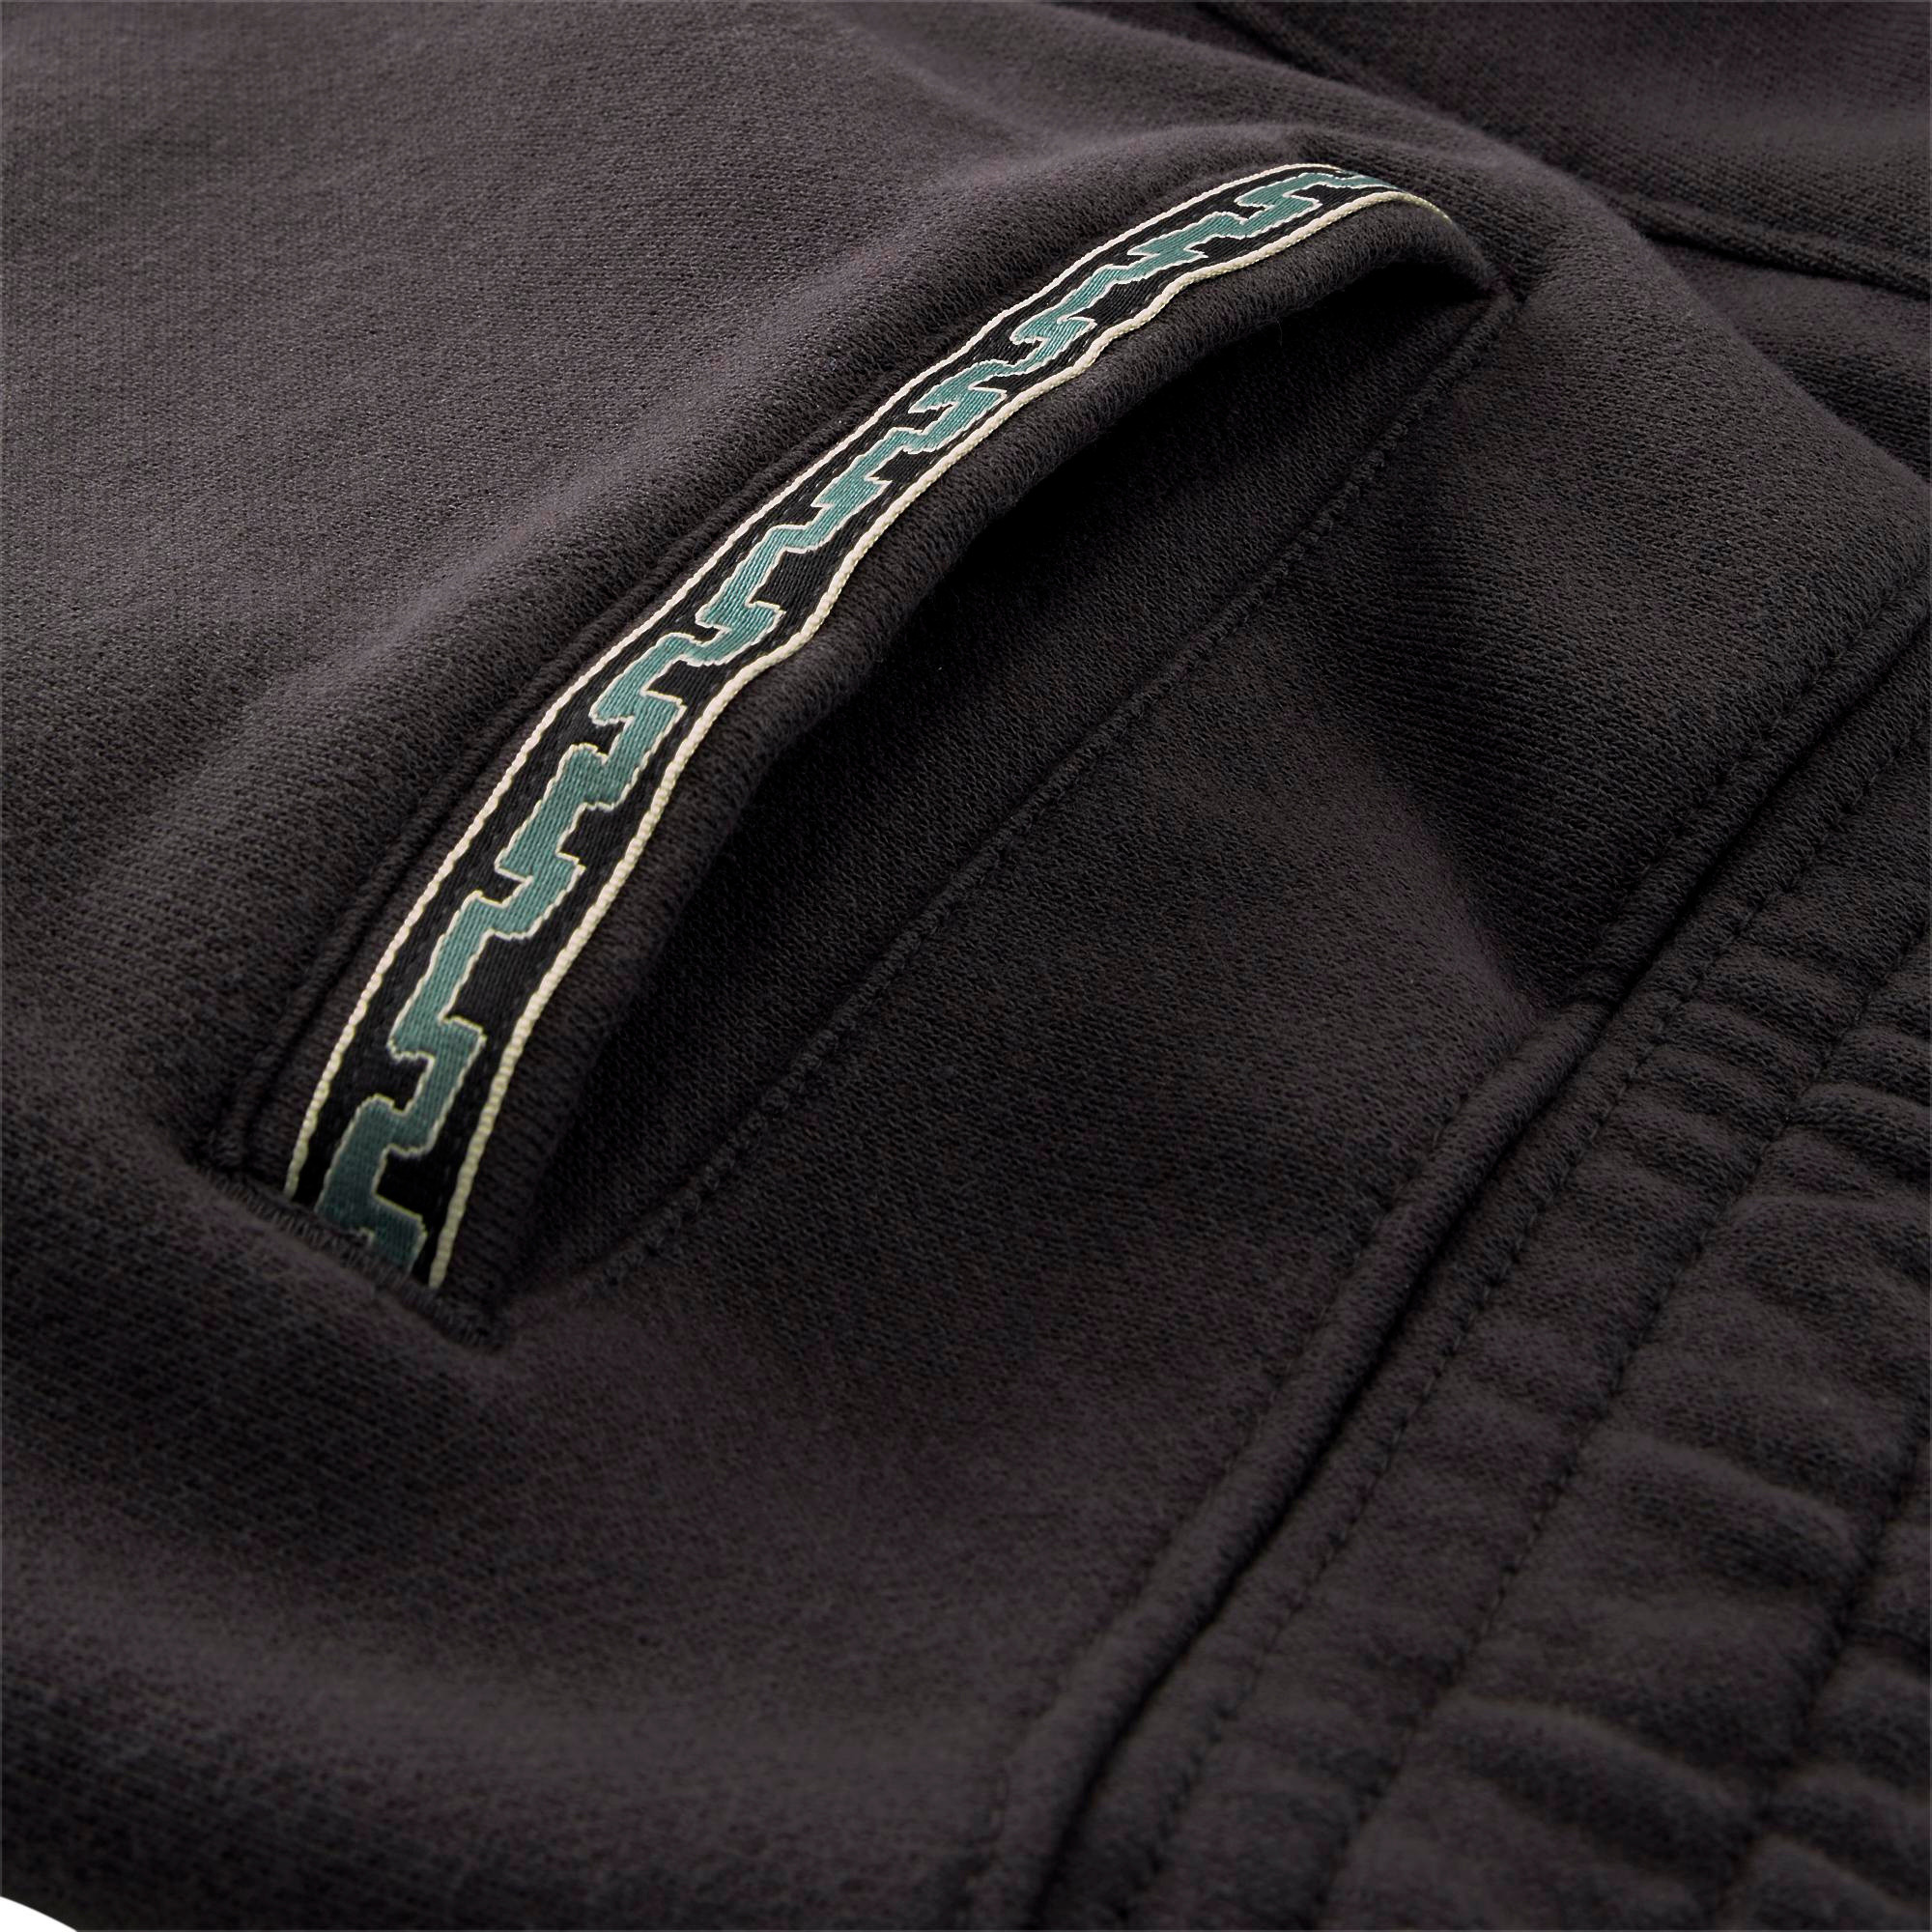 Puma x Market shorts, Black, large image number 4